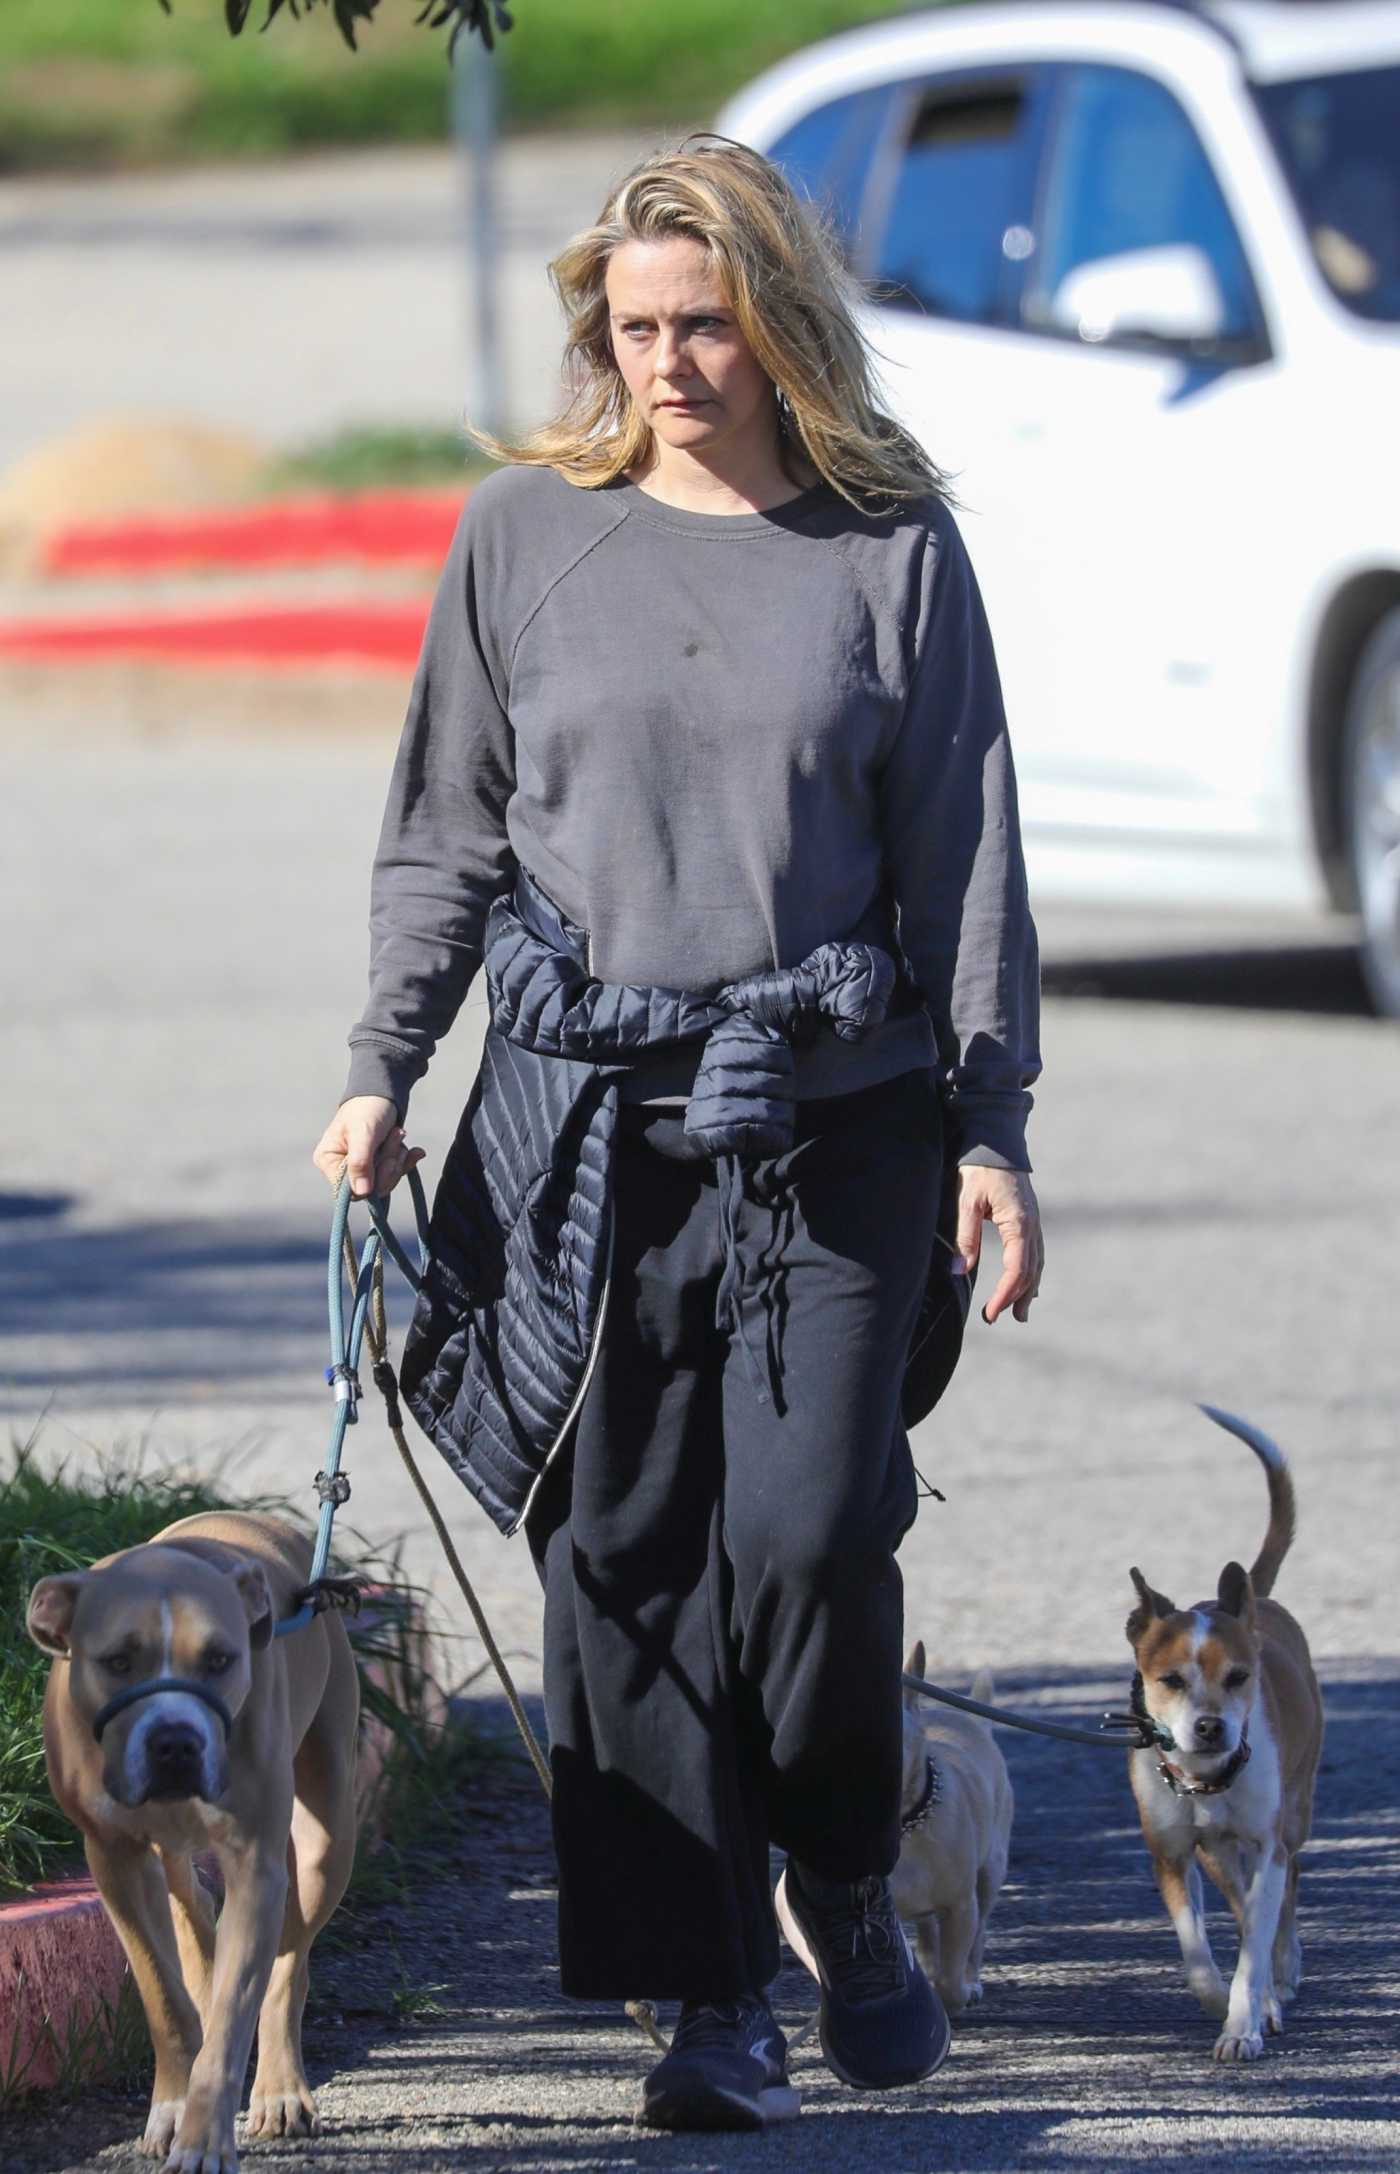 Alicia Silverstone in a Grey Sweatshirt Walks Her Dogs in Los Angeles 01/30/2022